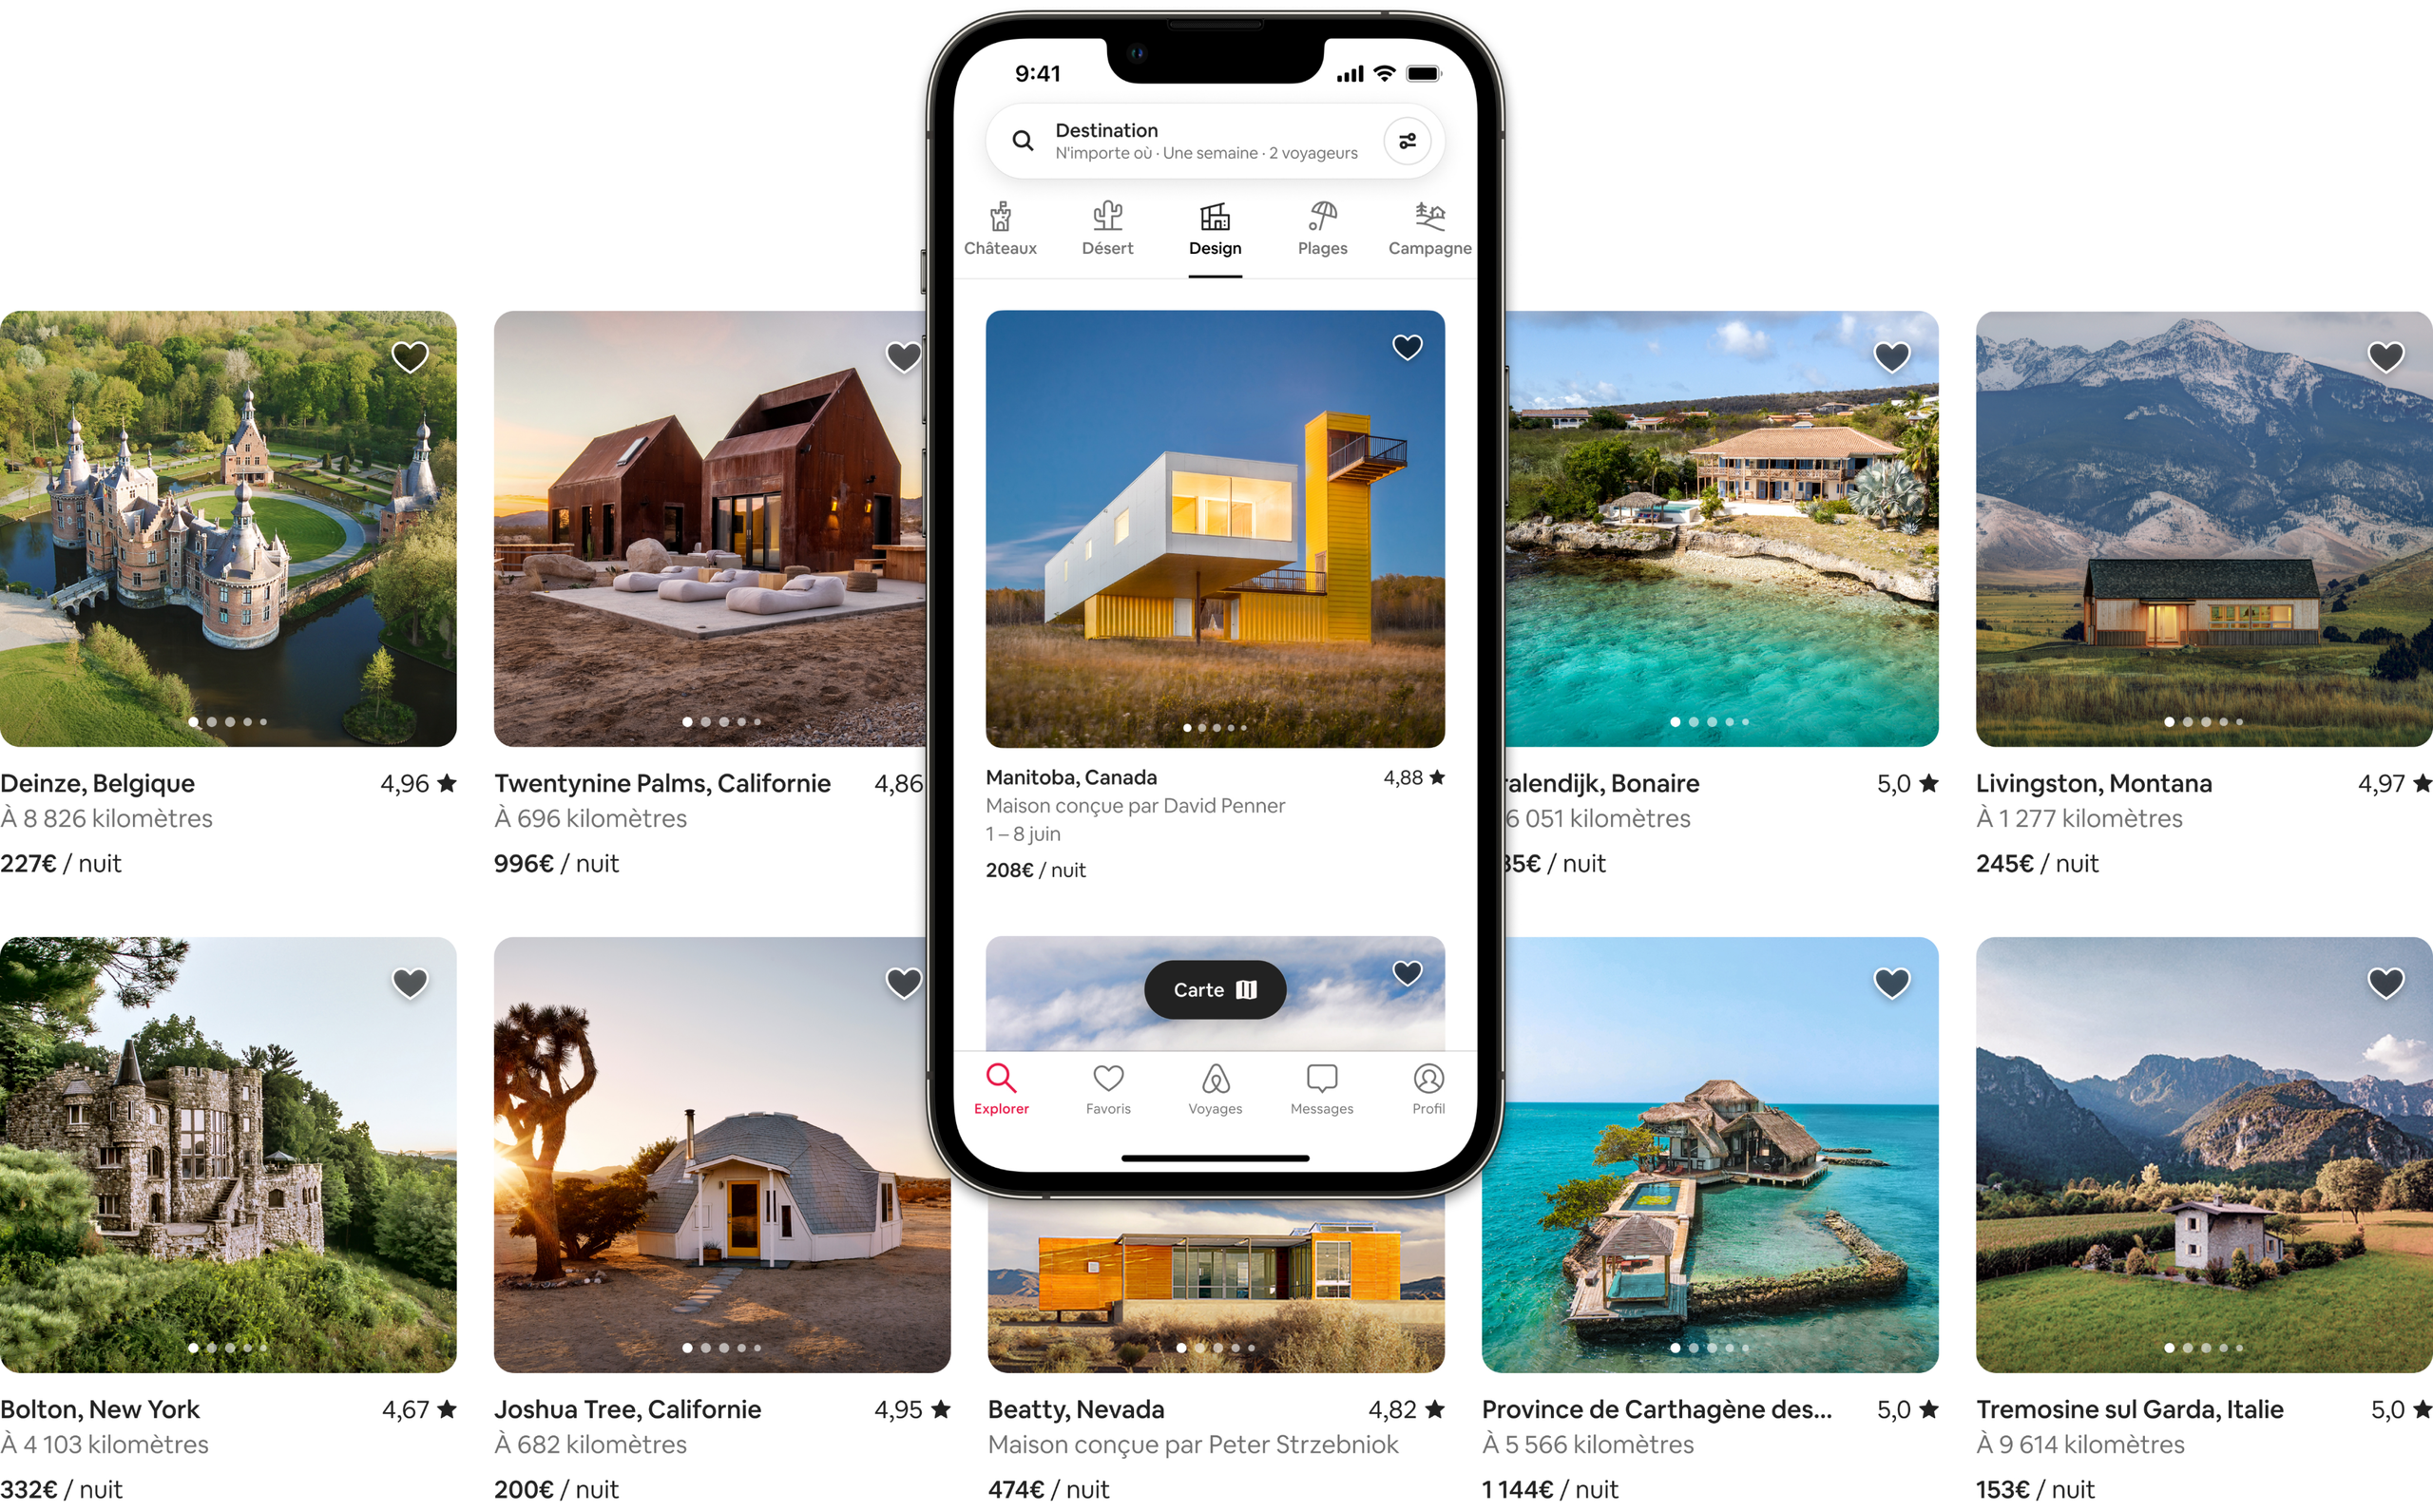 Deux rangées de belles photos montrent des annonces dans les catégories Châteaux, Désert, Design, Plages et Campagne d'Airbnb. L'une des annonces apparaît sur un écran de téléphone portable, montrant comment elles s'afficheraient dans l'application Airbnb.